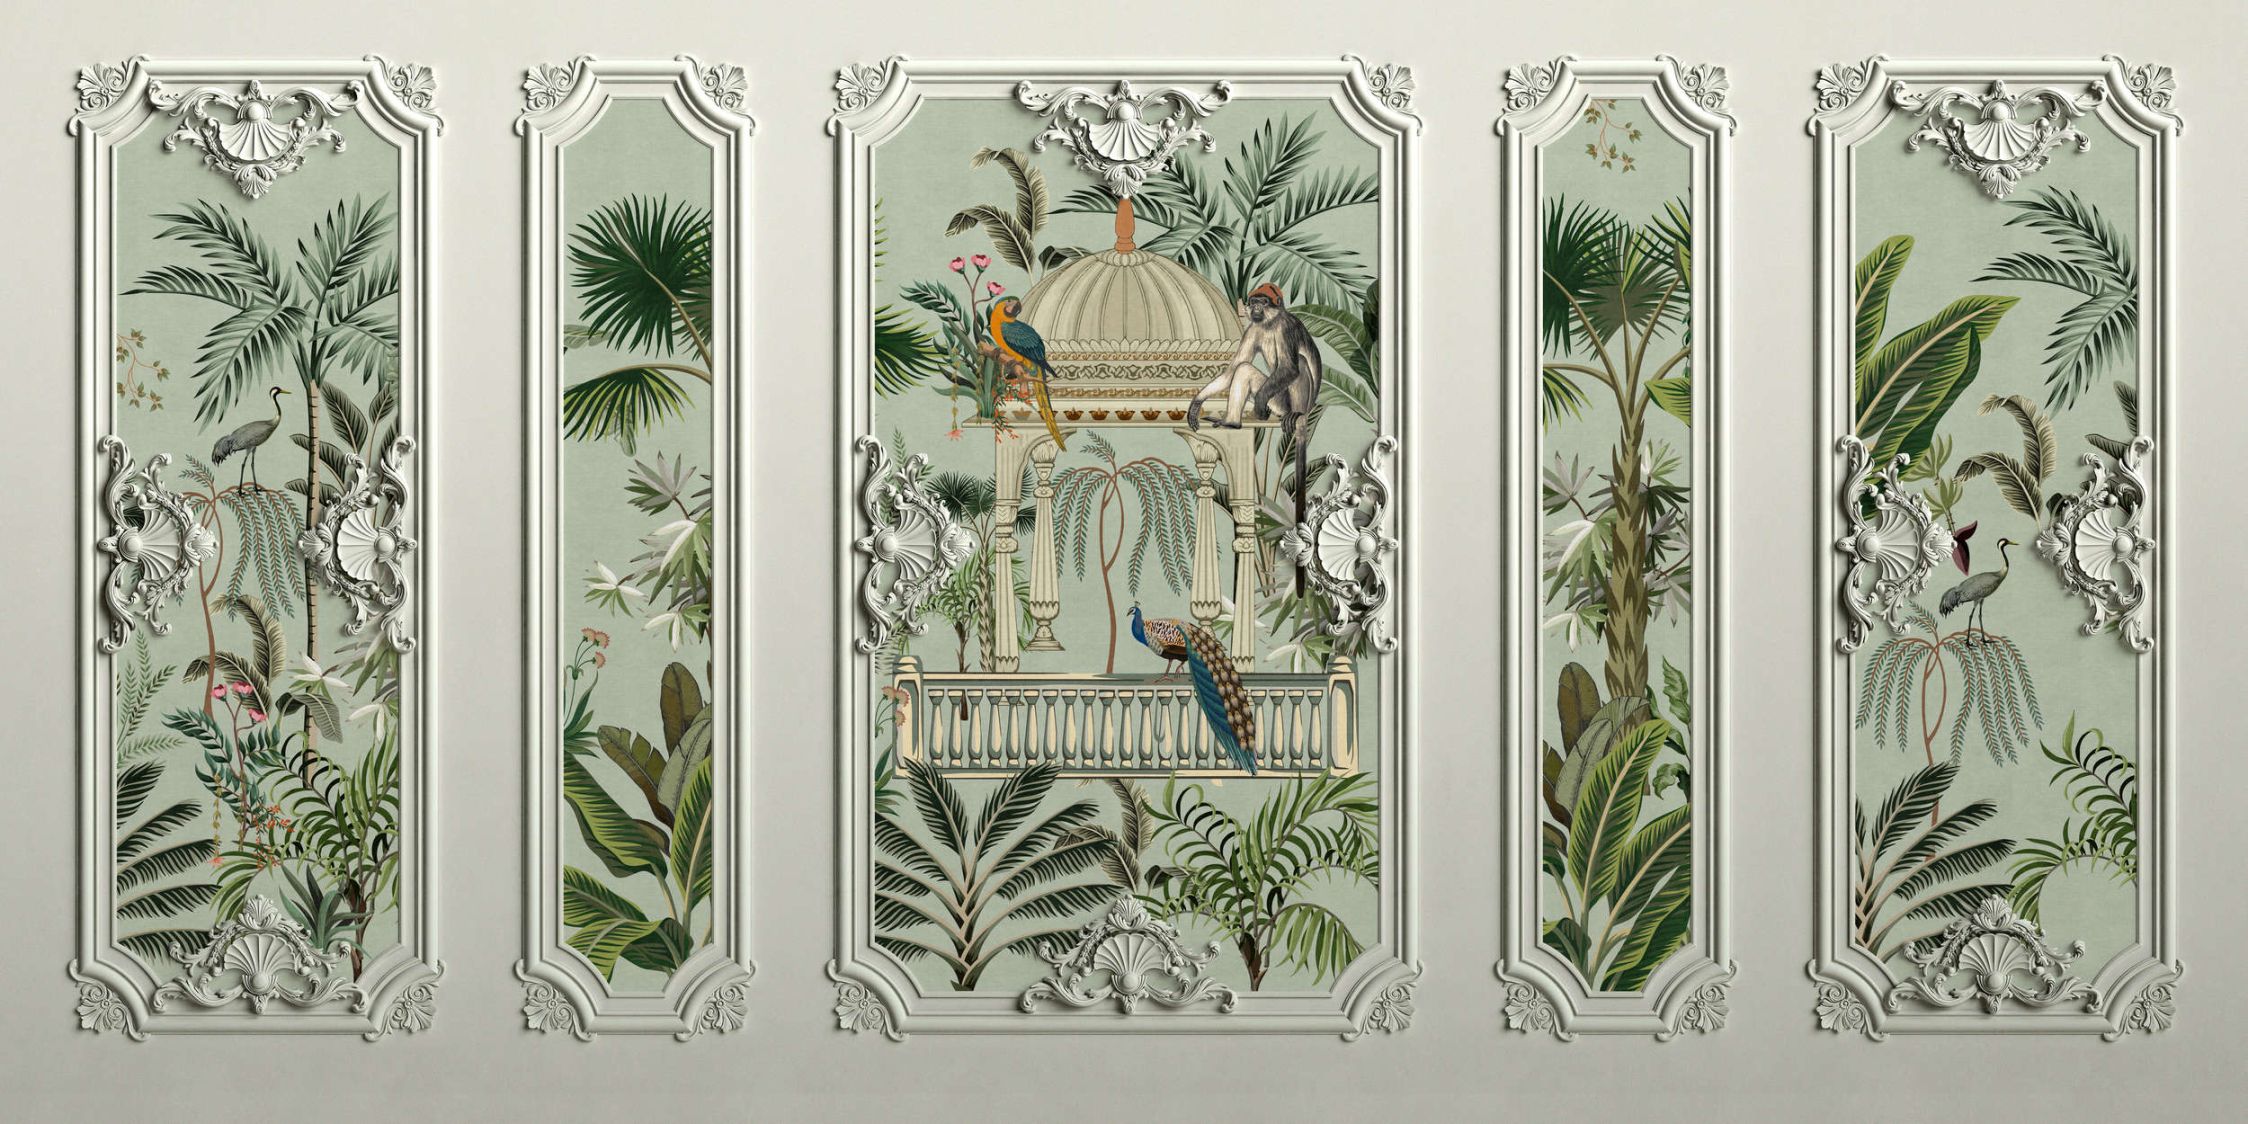             Digital behang »darjeeling« - stucco frame look met vogels & palmbomen met linnenstructuur op de achtergrond - mat, glad vliesdoek
        